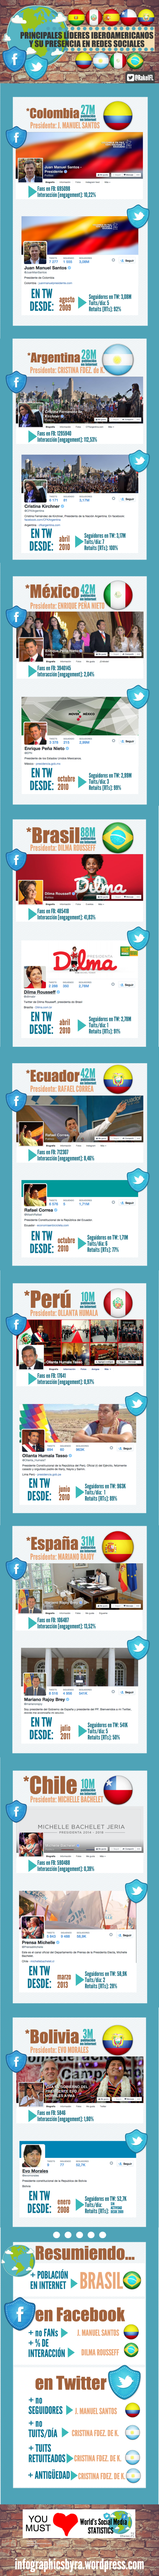 Principales líderes iberoamericanos en Redes Sociales